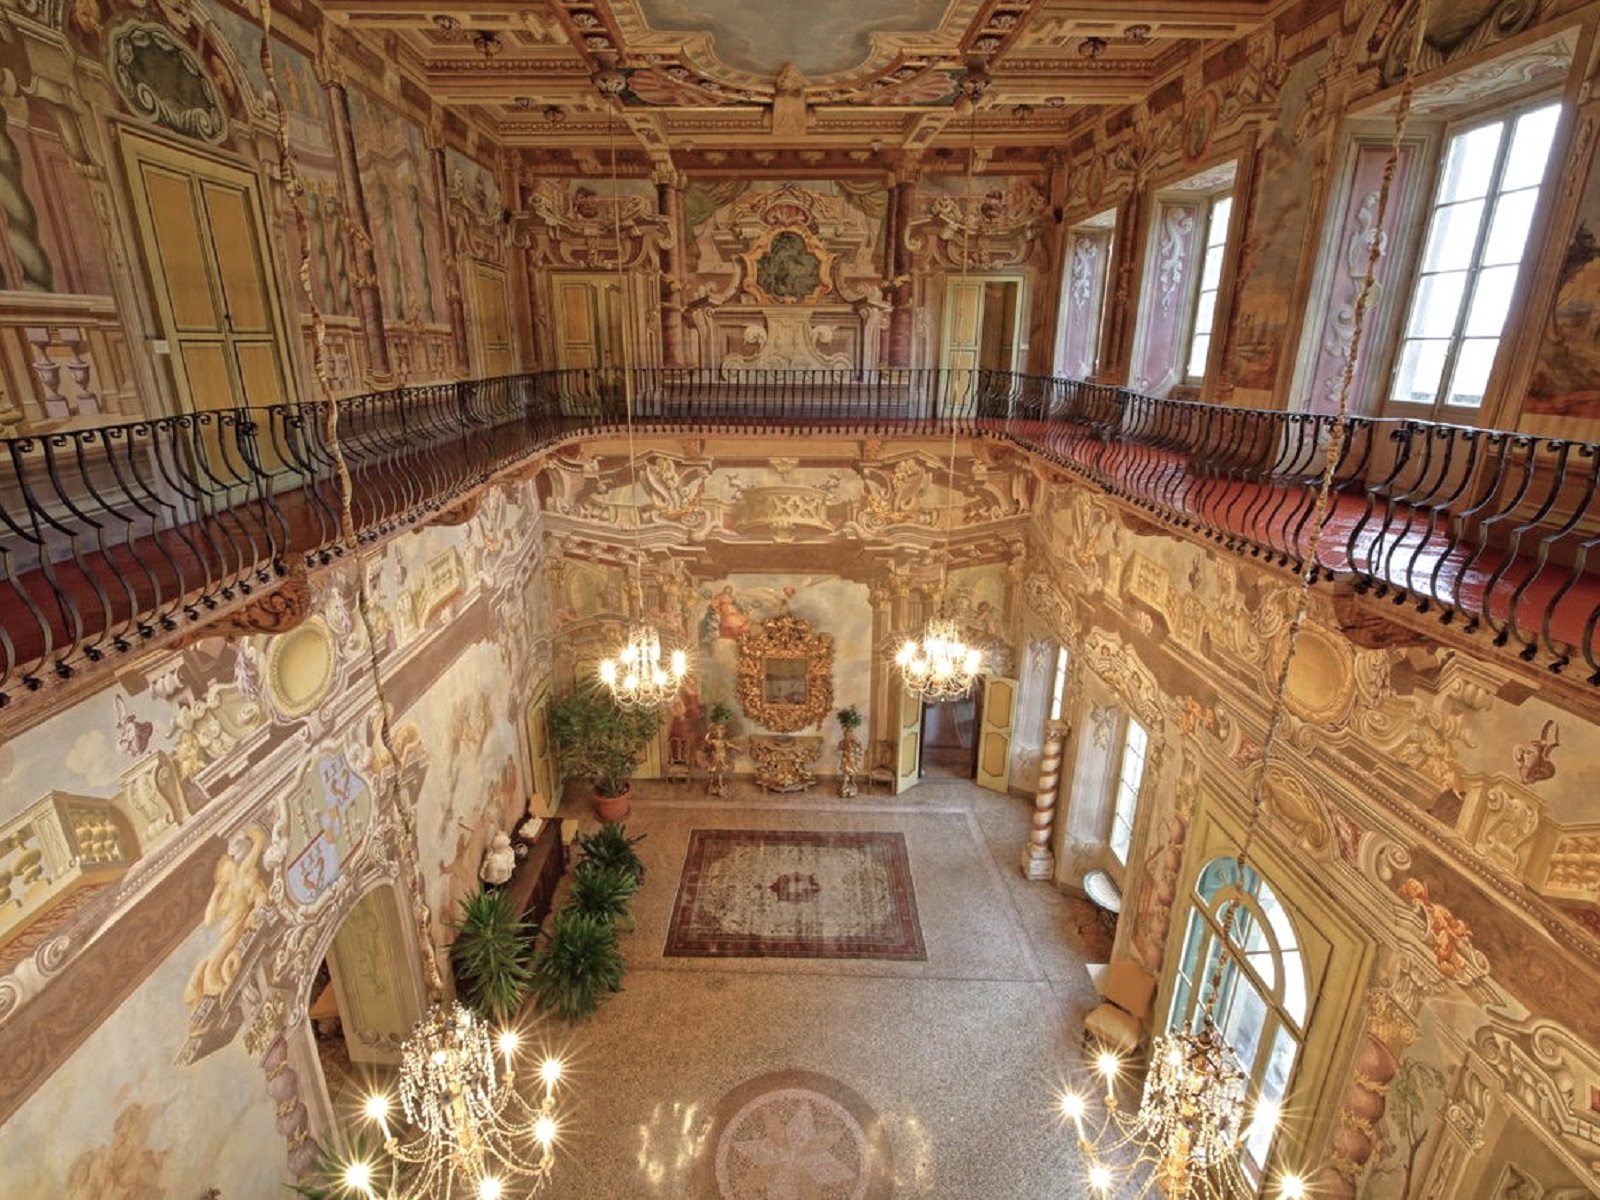 Visite guidate tutto l’anno per scoprire Villa Dosi Delfini, gioiello della Pontremoli barocca